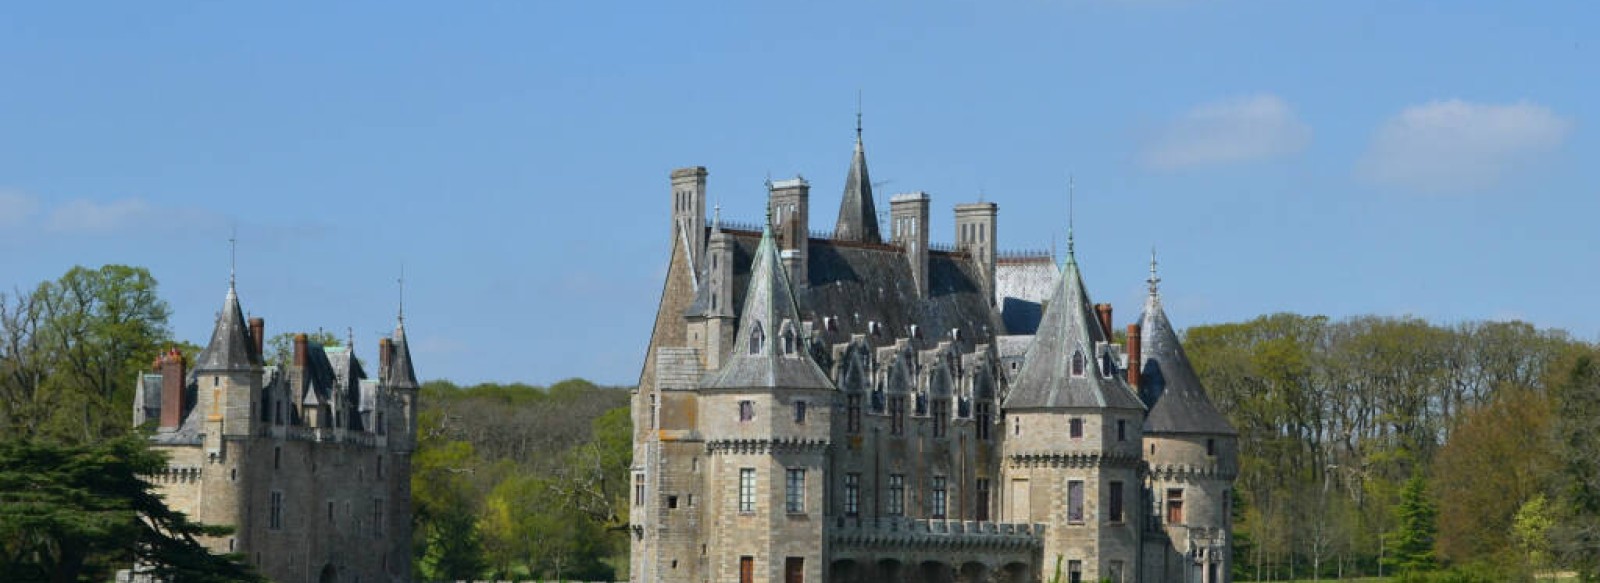 Chateau de La Bretesche - visite de la cour